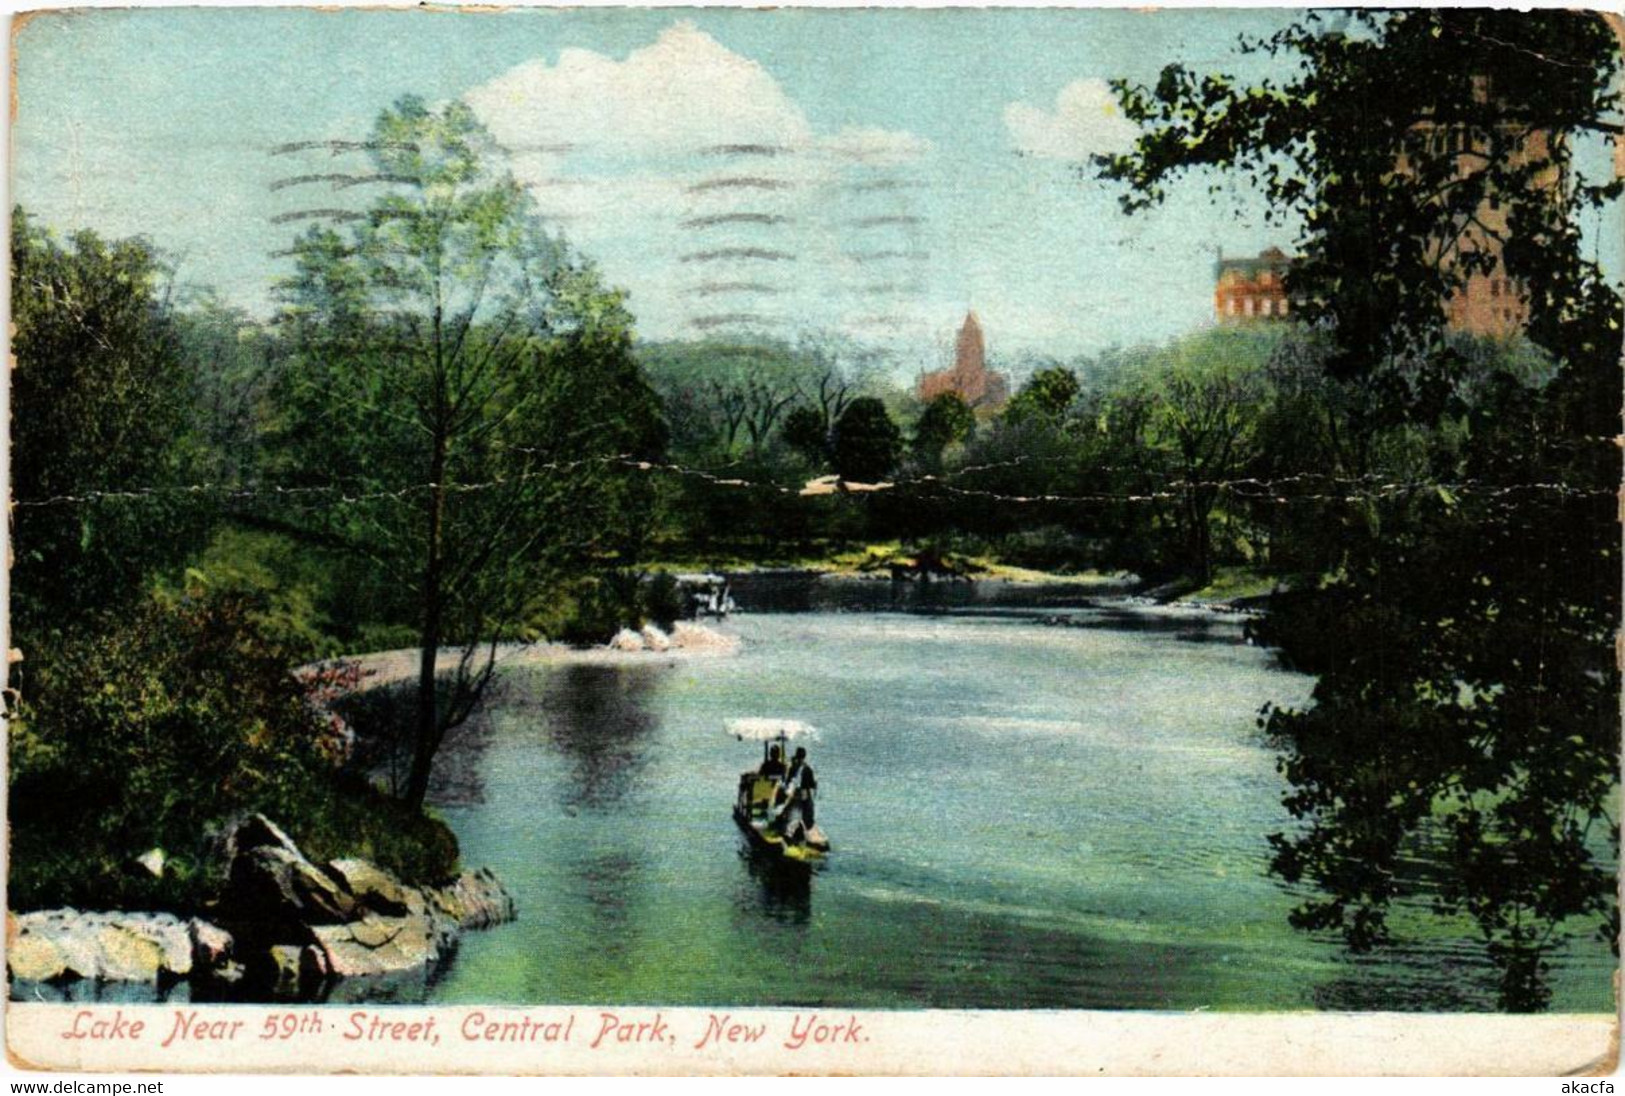 CPA AK Lake Near 59th Street Central Park NEW YORK CITY USA (790314) - Central Park